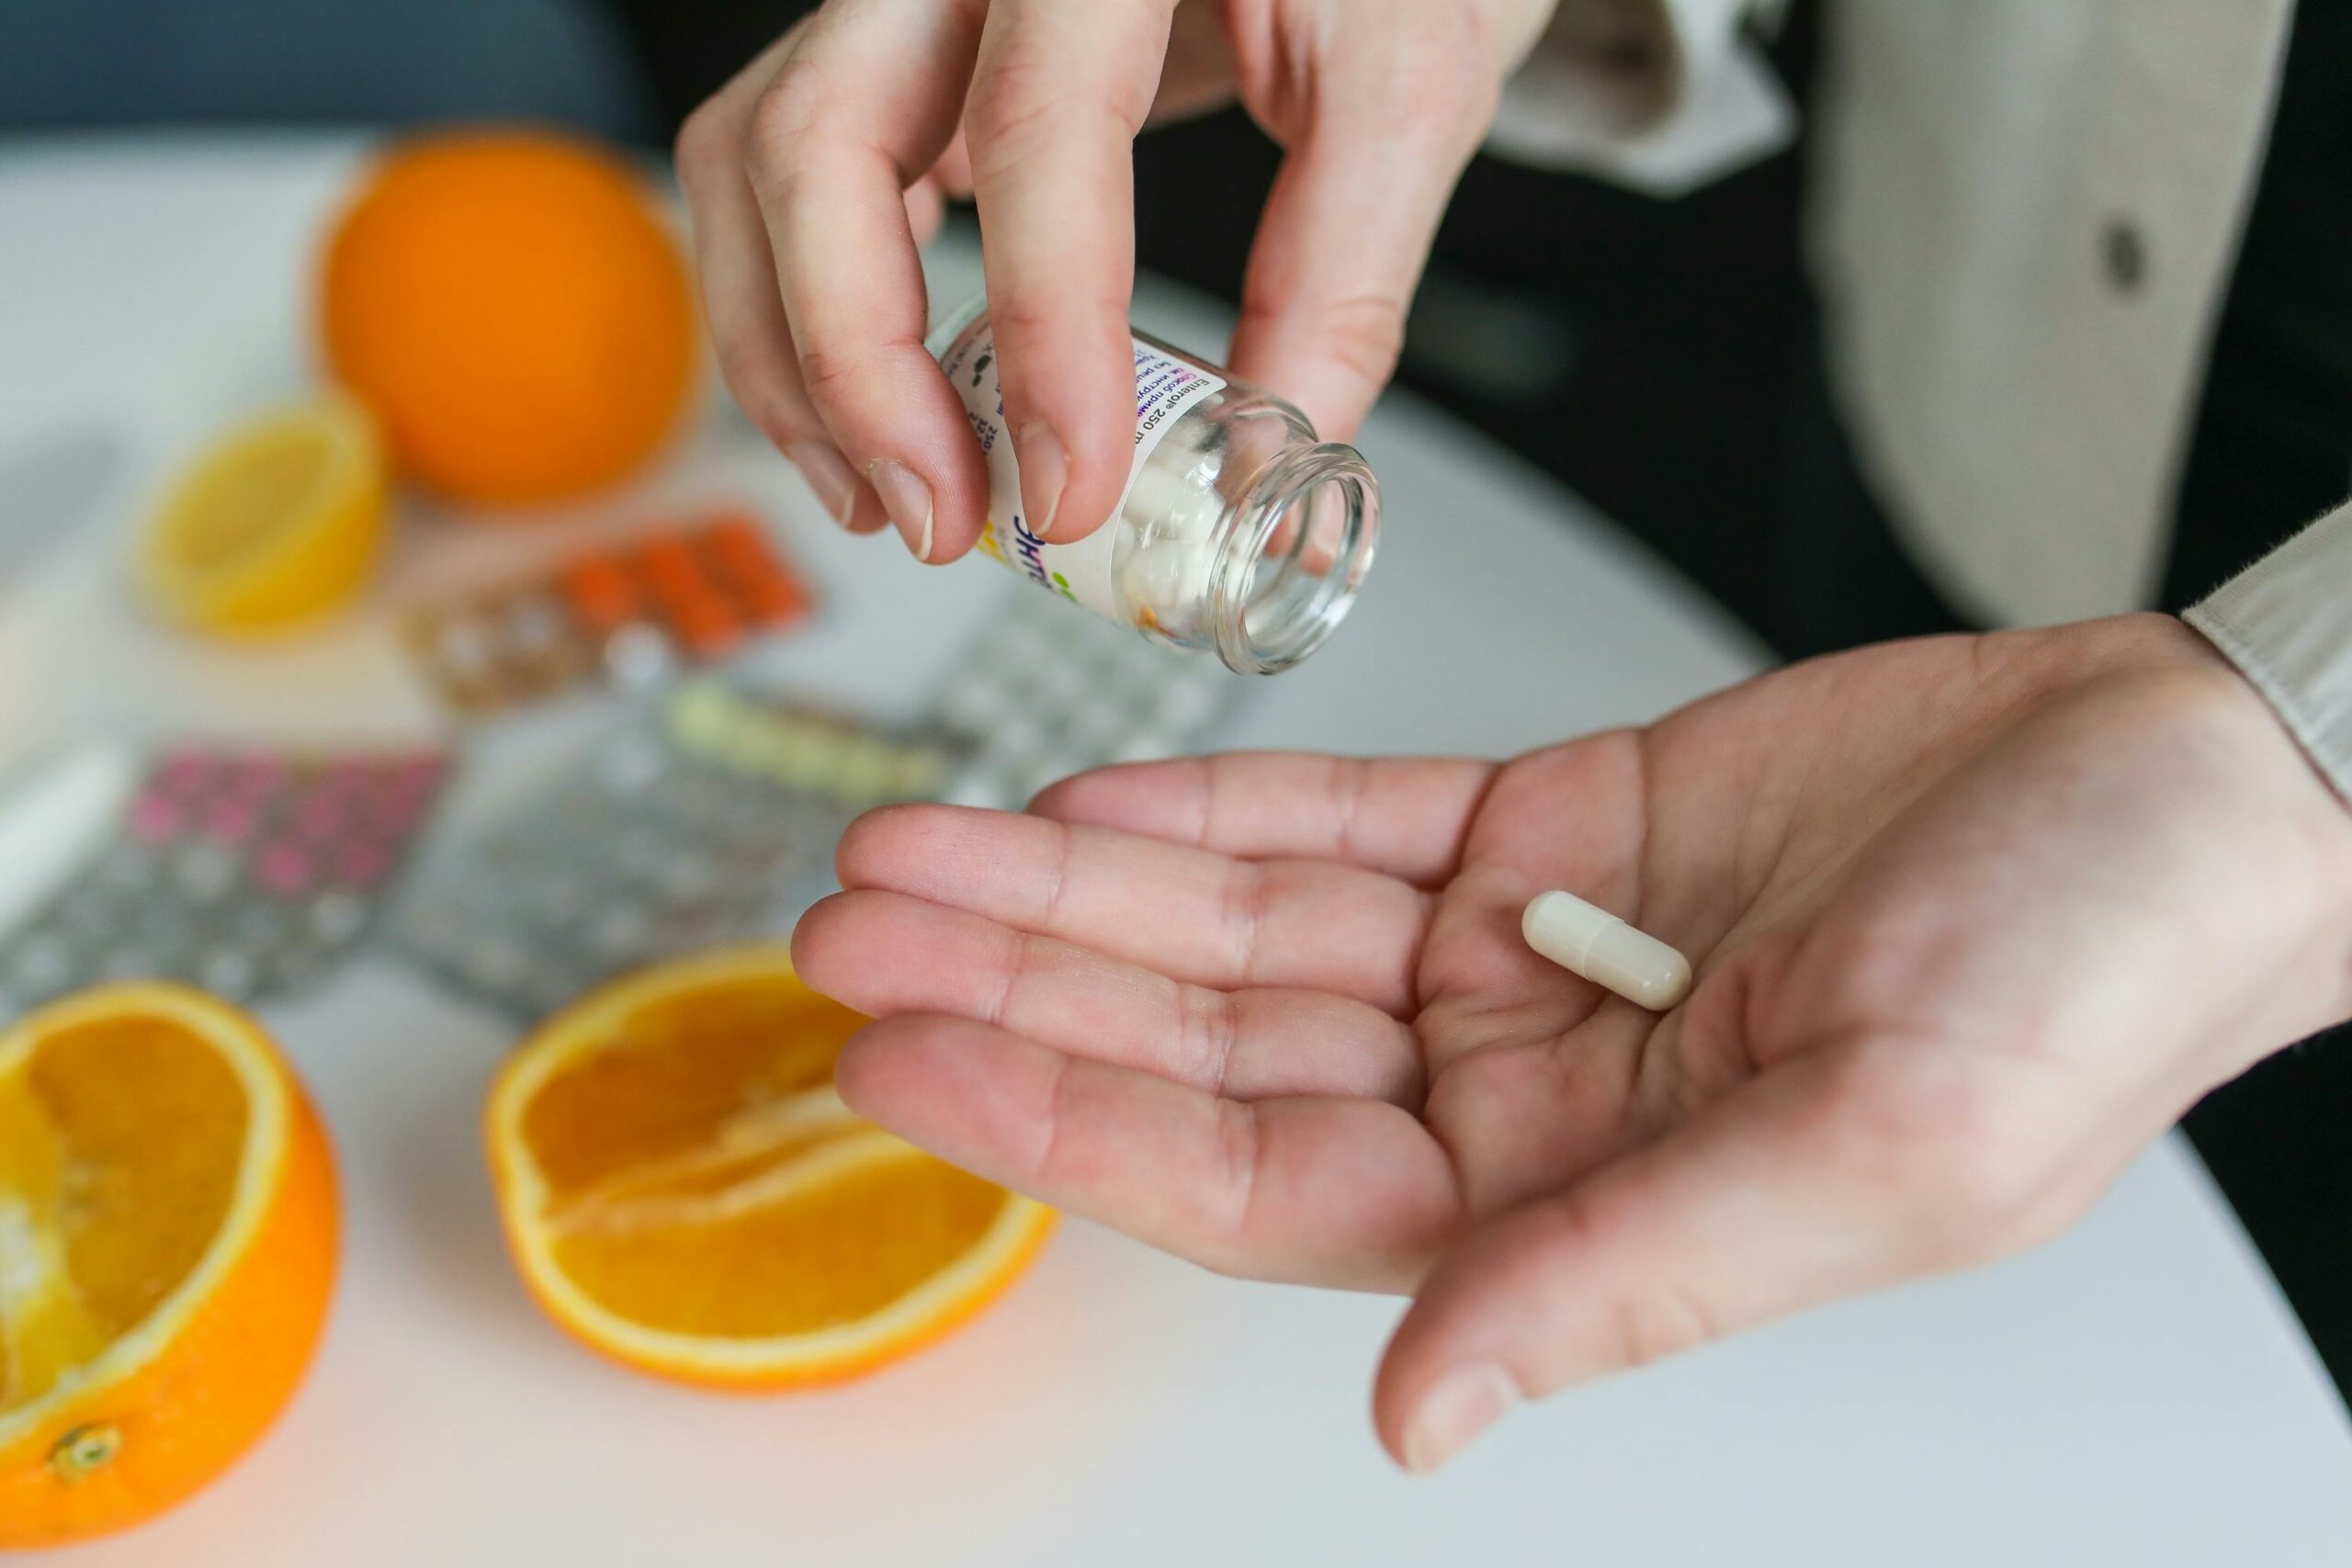 Una donna mette le pillole di Ashwagandha in un barattolo accanto alle arance, sfruttandone i benefici scientifici per la salute.